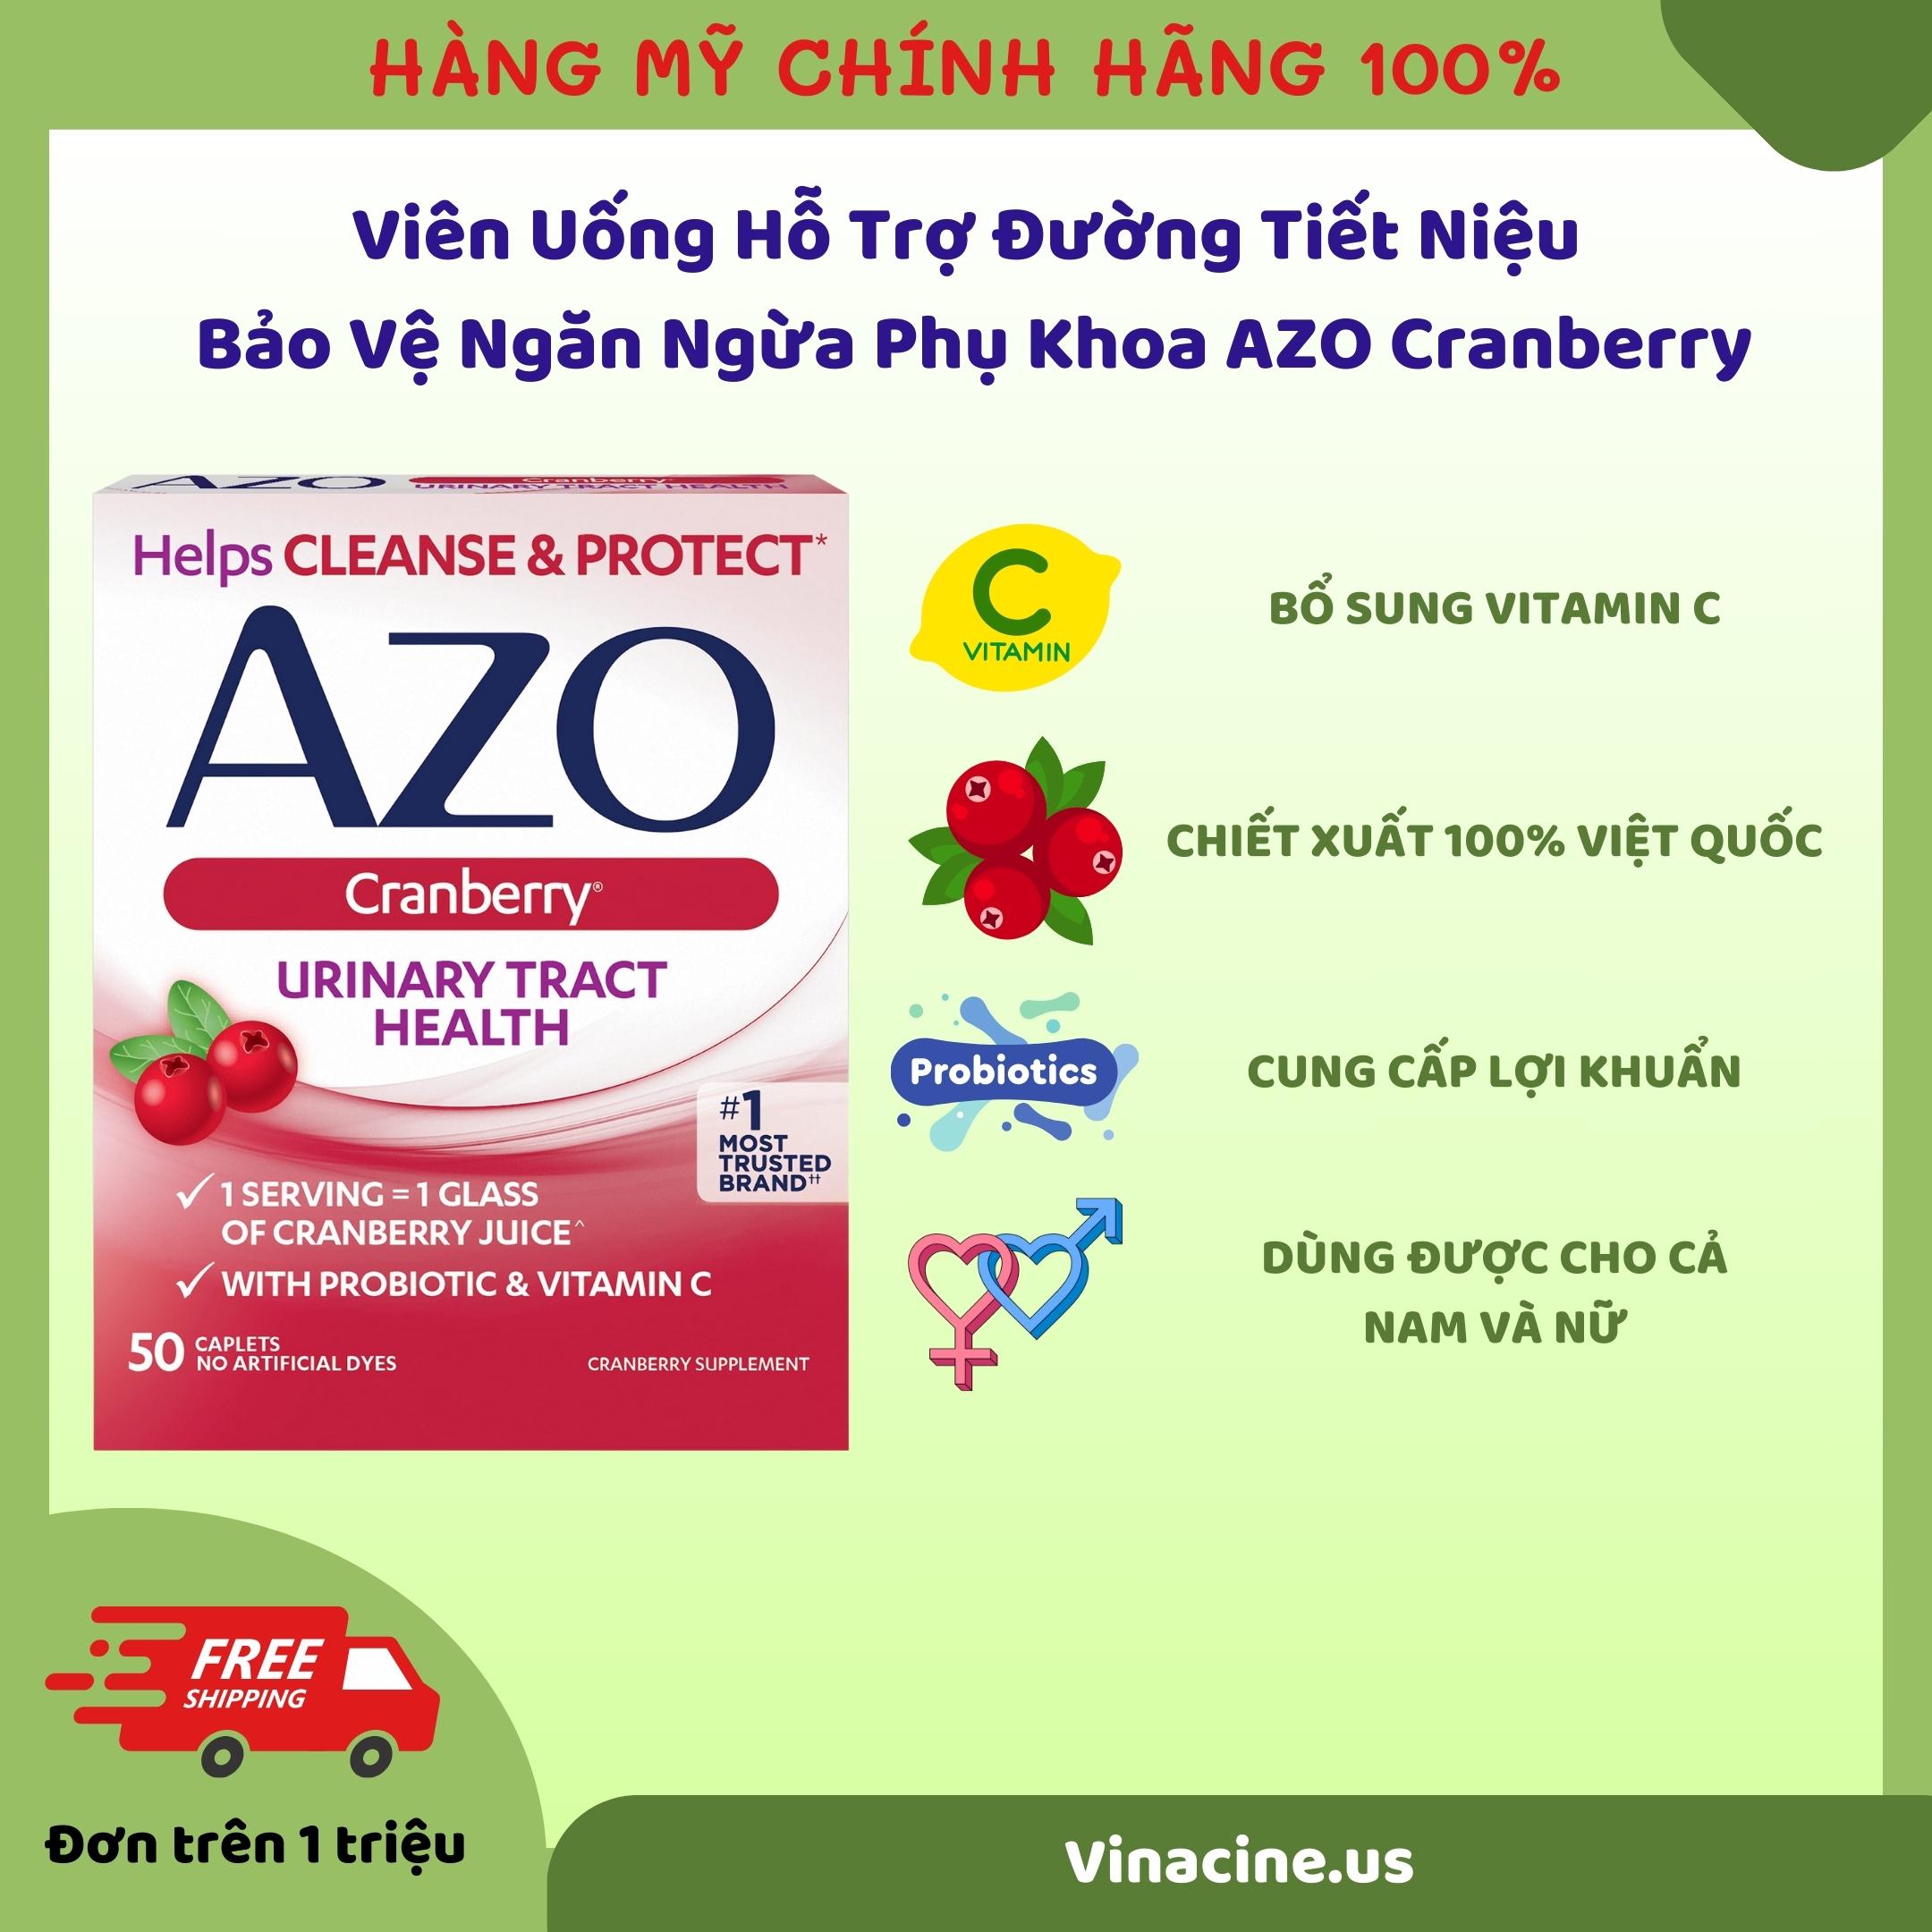 Viên Uống Hỗ Trợ Đường Tiết Niệu Bảo Vệ Ngăn Ngừa Phụ Khoa AZO Cranberry